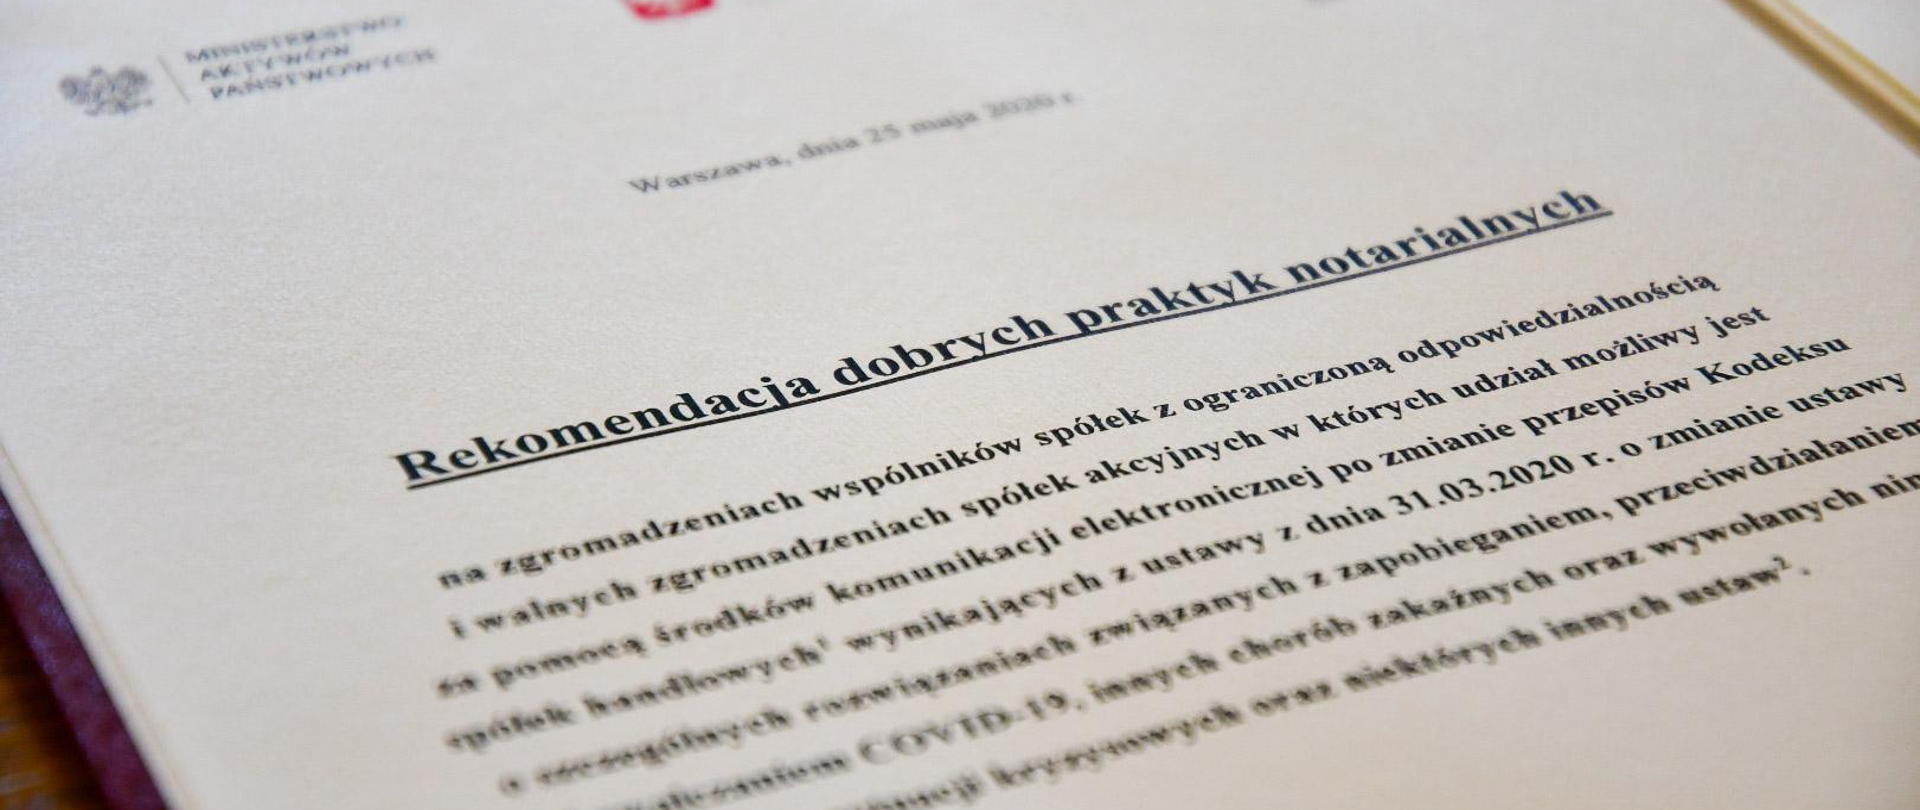 Podpisanie rekomendacji dobrych praktyk notarialnych